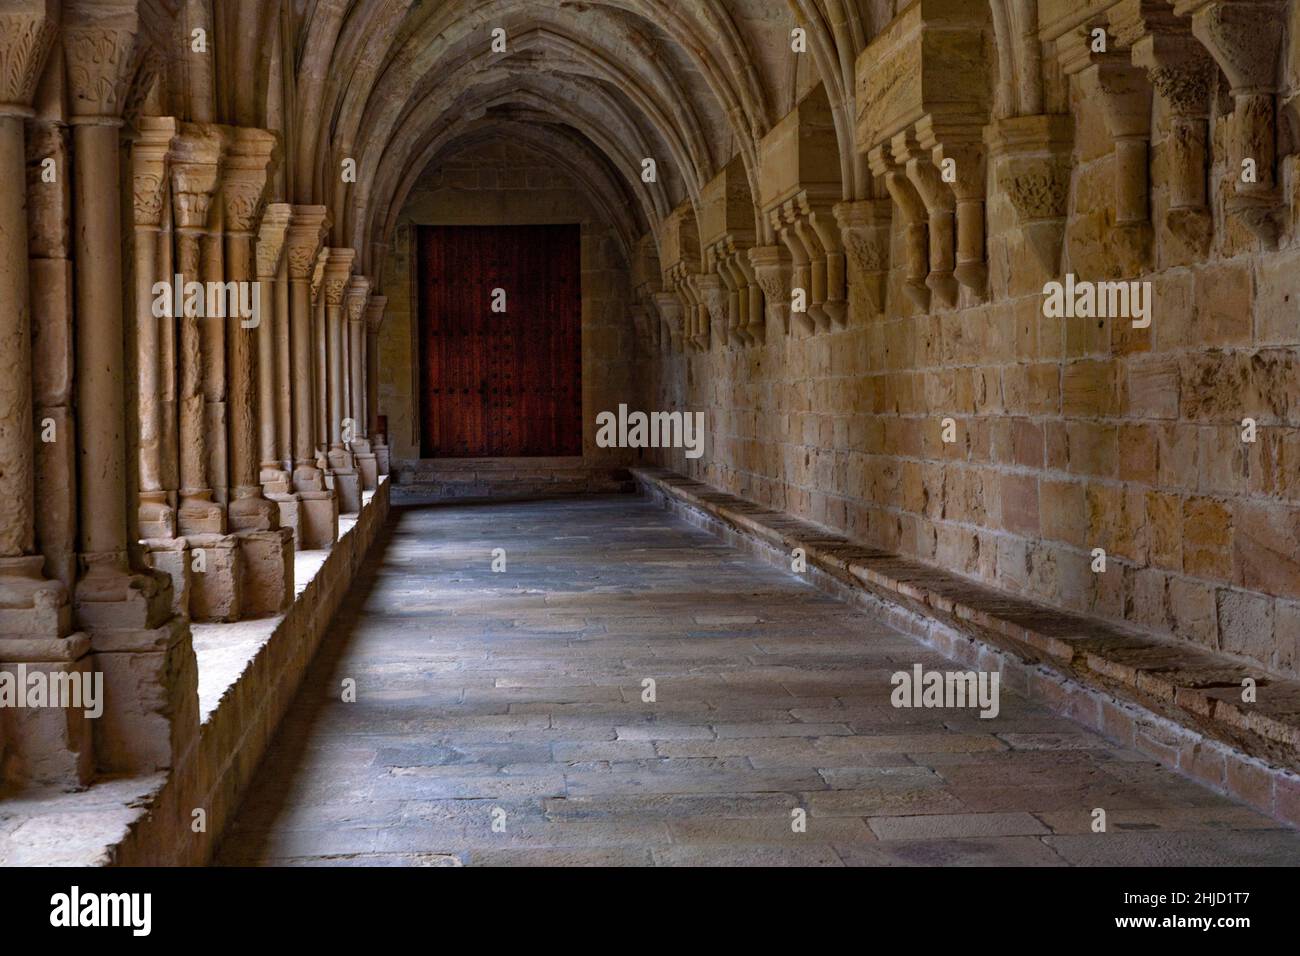 Claustro de la Abadía de Poblet, Reial Monestir de Santa Maria de Poblet, Cataluña, España. Se trata de un monasterio cisterciense, fundado en 1151, situado en la ciudad de f Foto de stock